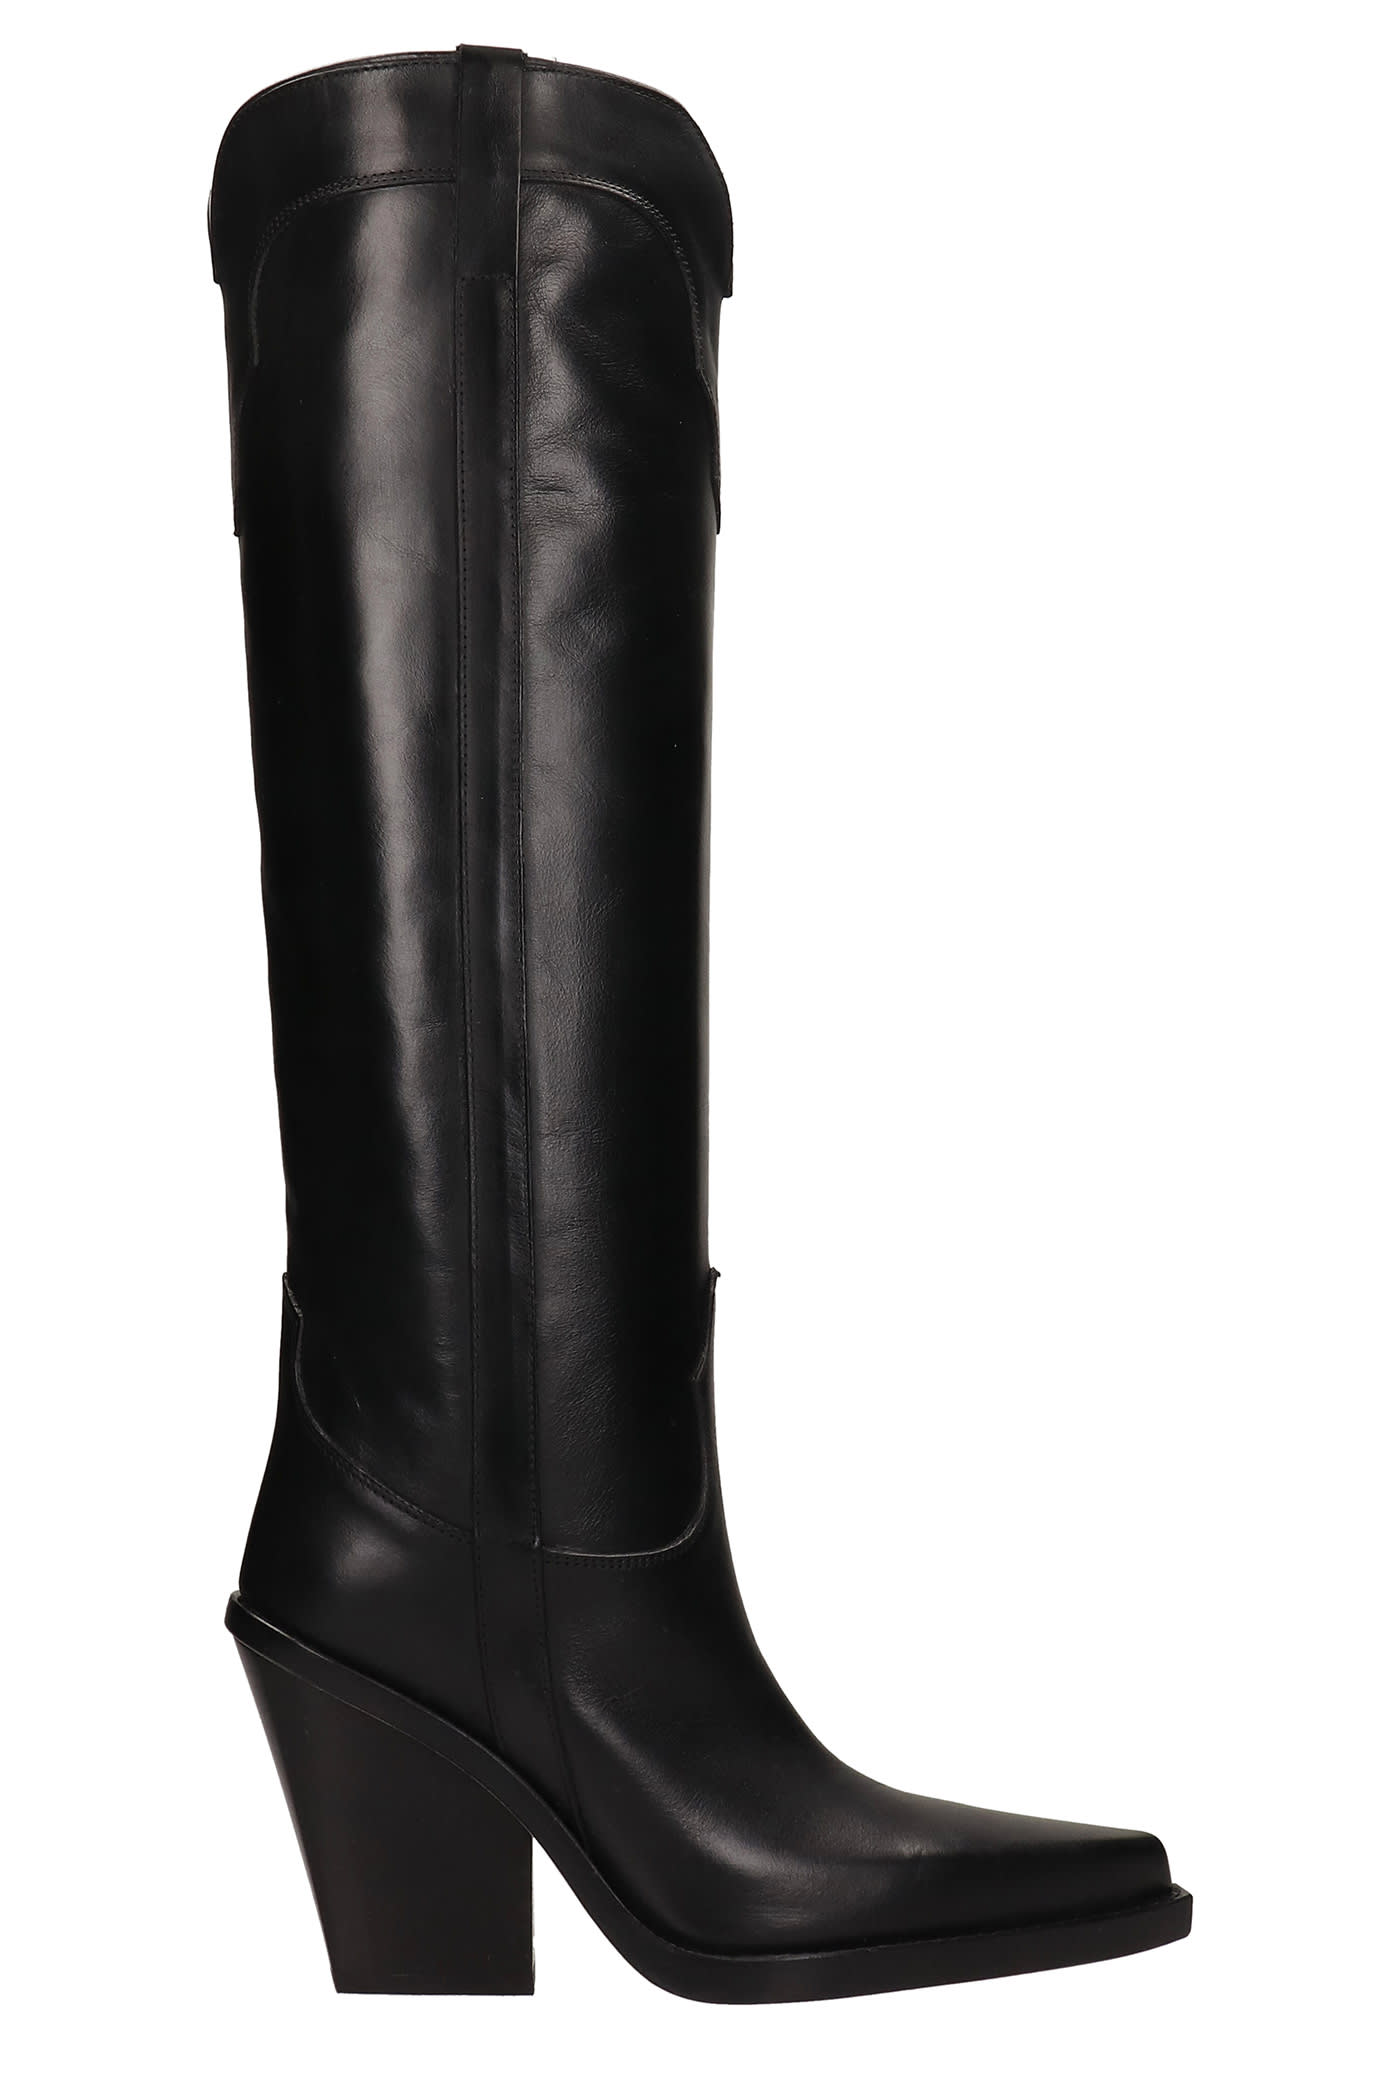 Paris Texas El Dorado Texan Boots In Black Leather